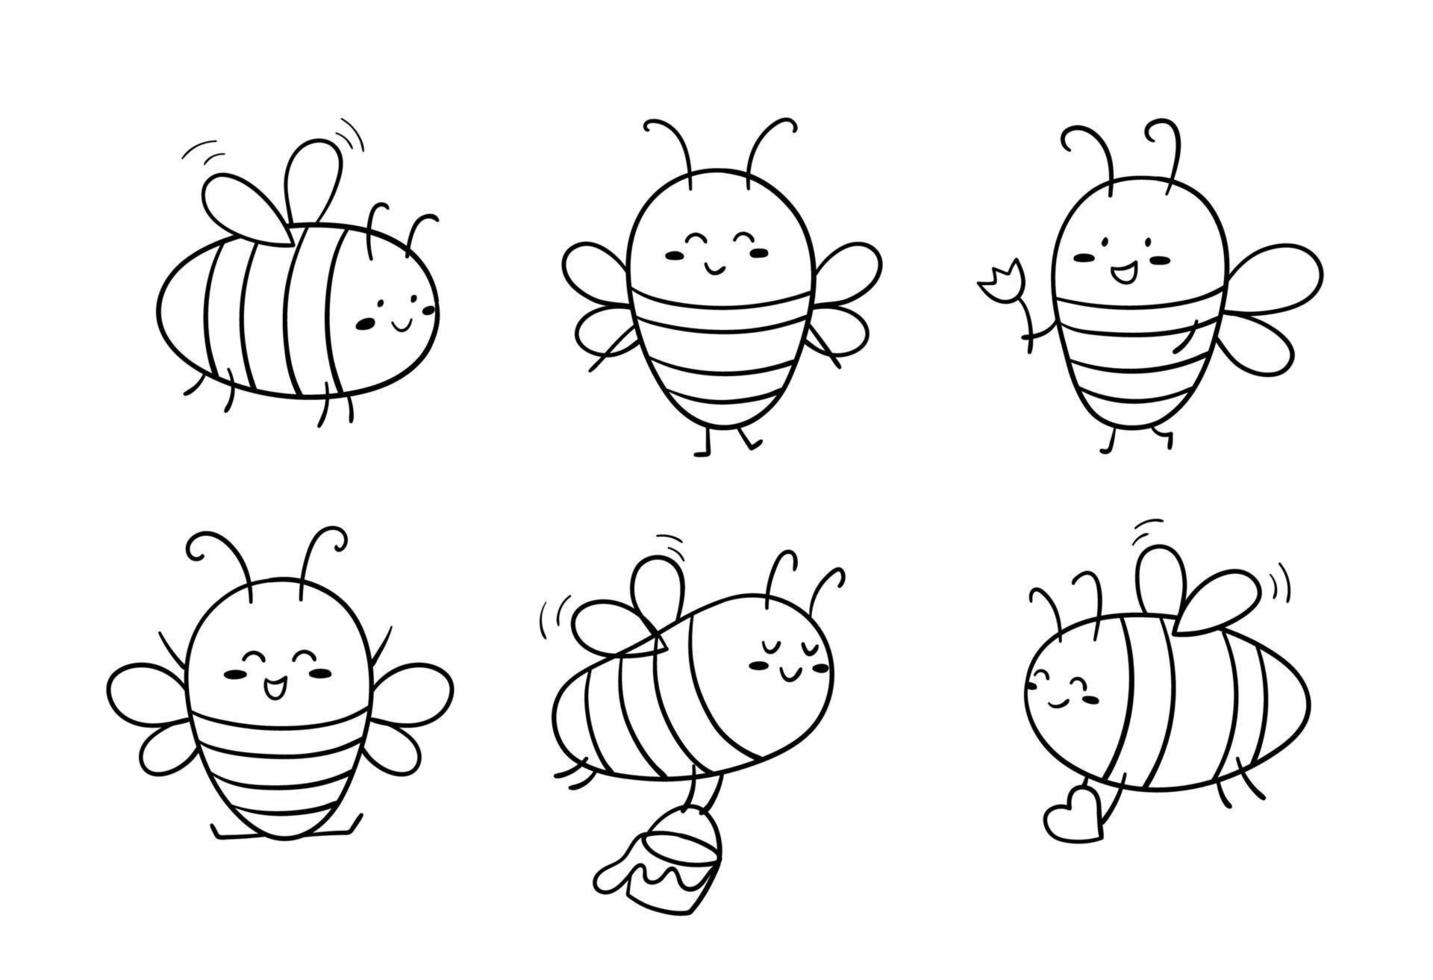 croquis de doodle drôle abeilles mignonnes. insecte volant dessiné à la main. illustration linéaire vectorielle. vecteur